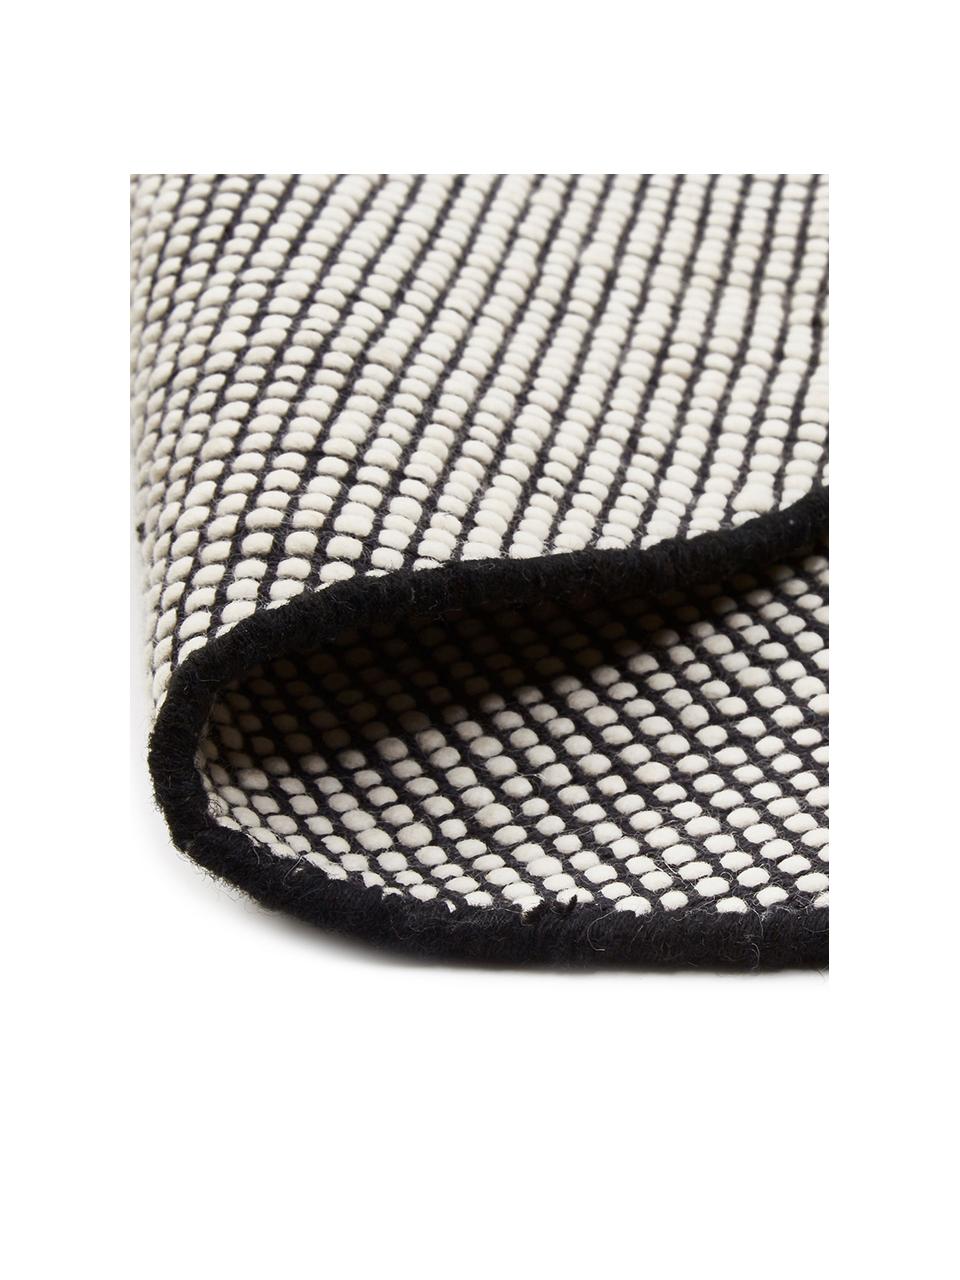 Kulatý vlněný koberec Amaro, ručně tkaný, Černá, krémově bílá, Ø 140 cm (velikost M)